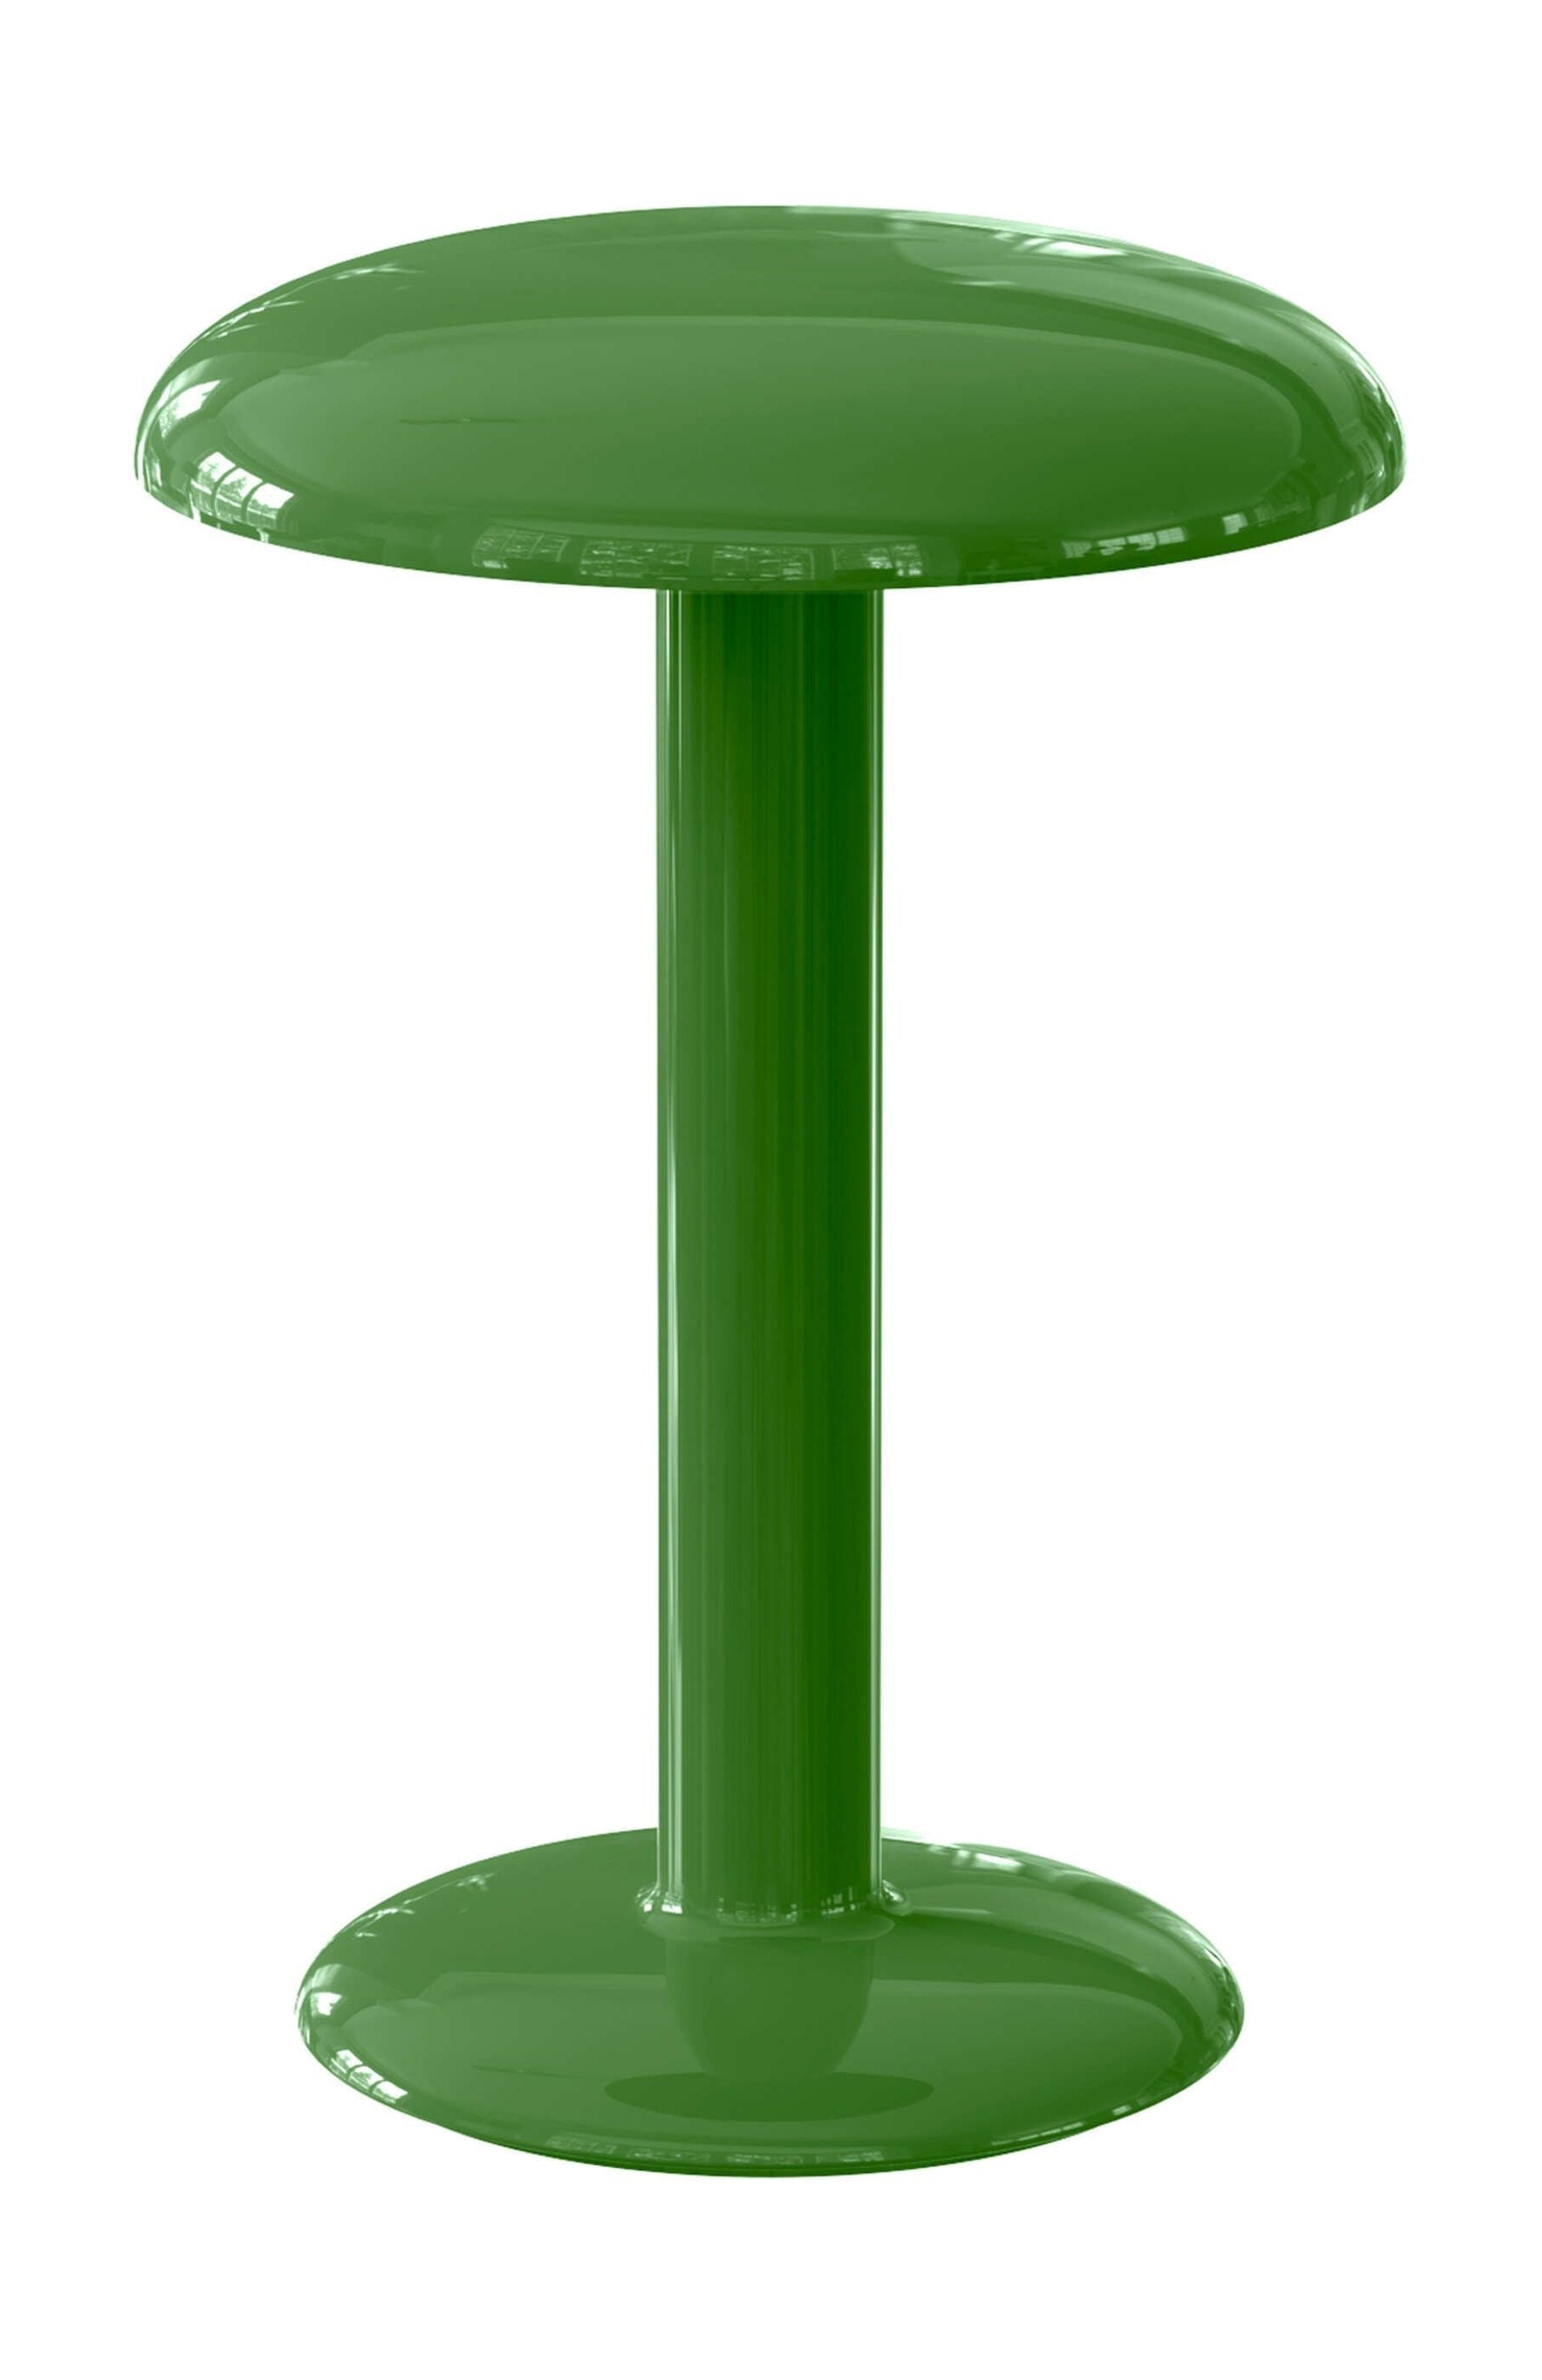 Flos gustav bordslampa 2700 k, lackerad grön